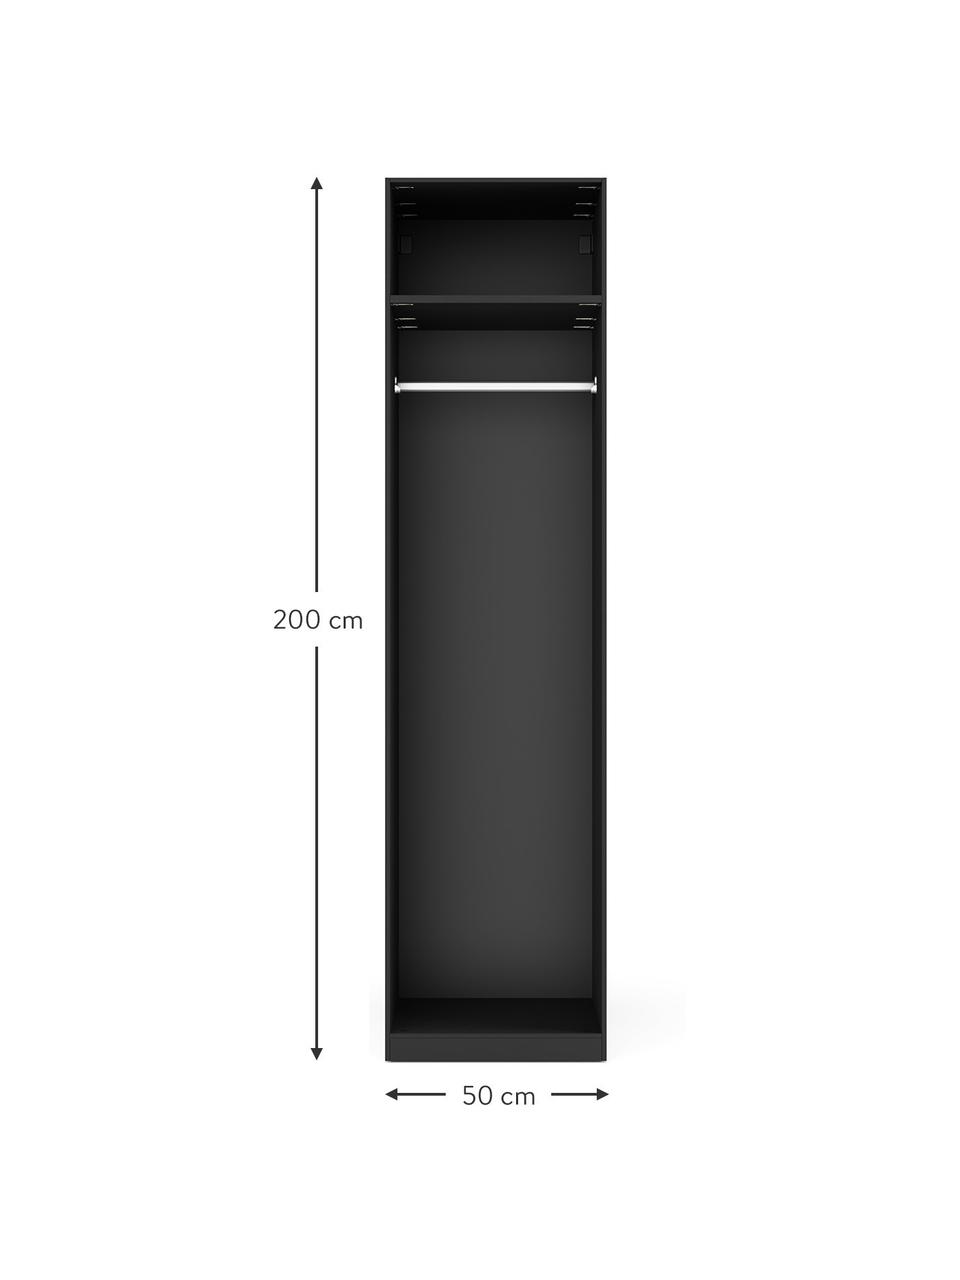 Modulaire draaideurkast Leon in zwart, 50 cm breed, verschillende varianten, Hout, zwart, Basis interieur, hoogte 200 cm